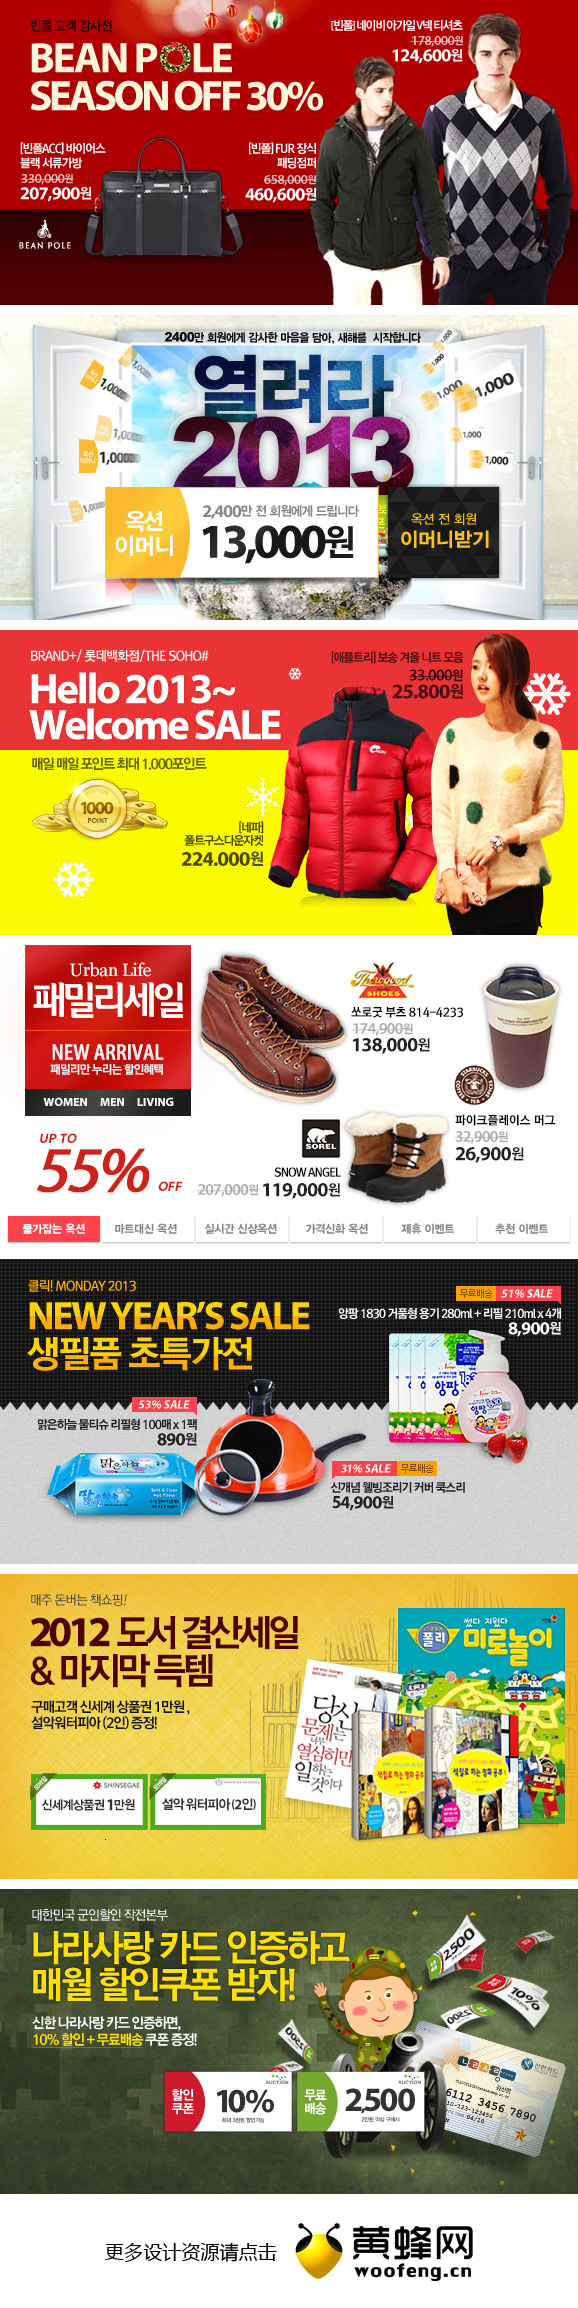 韩国购物网站促销广告banner设计欣赏0103